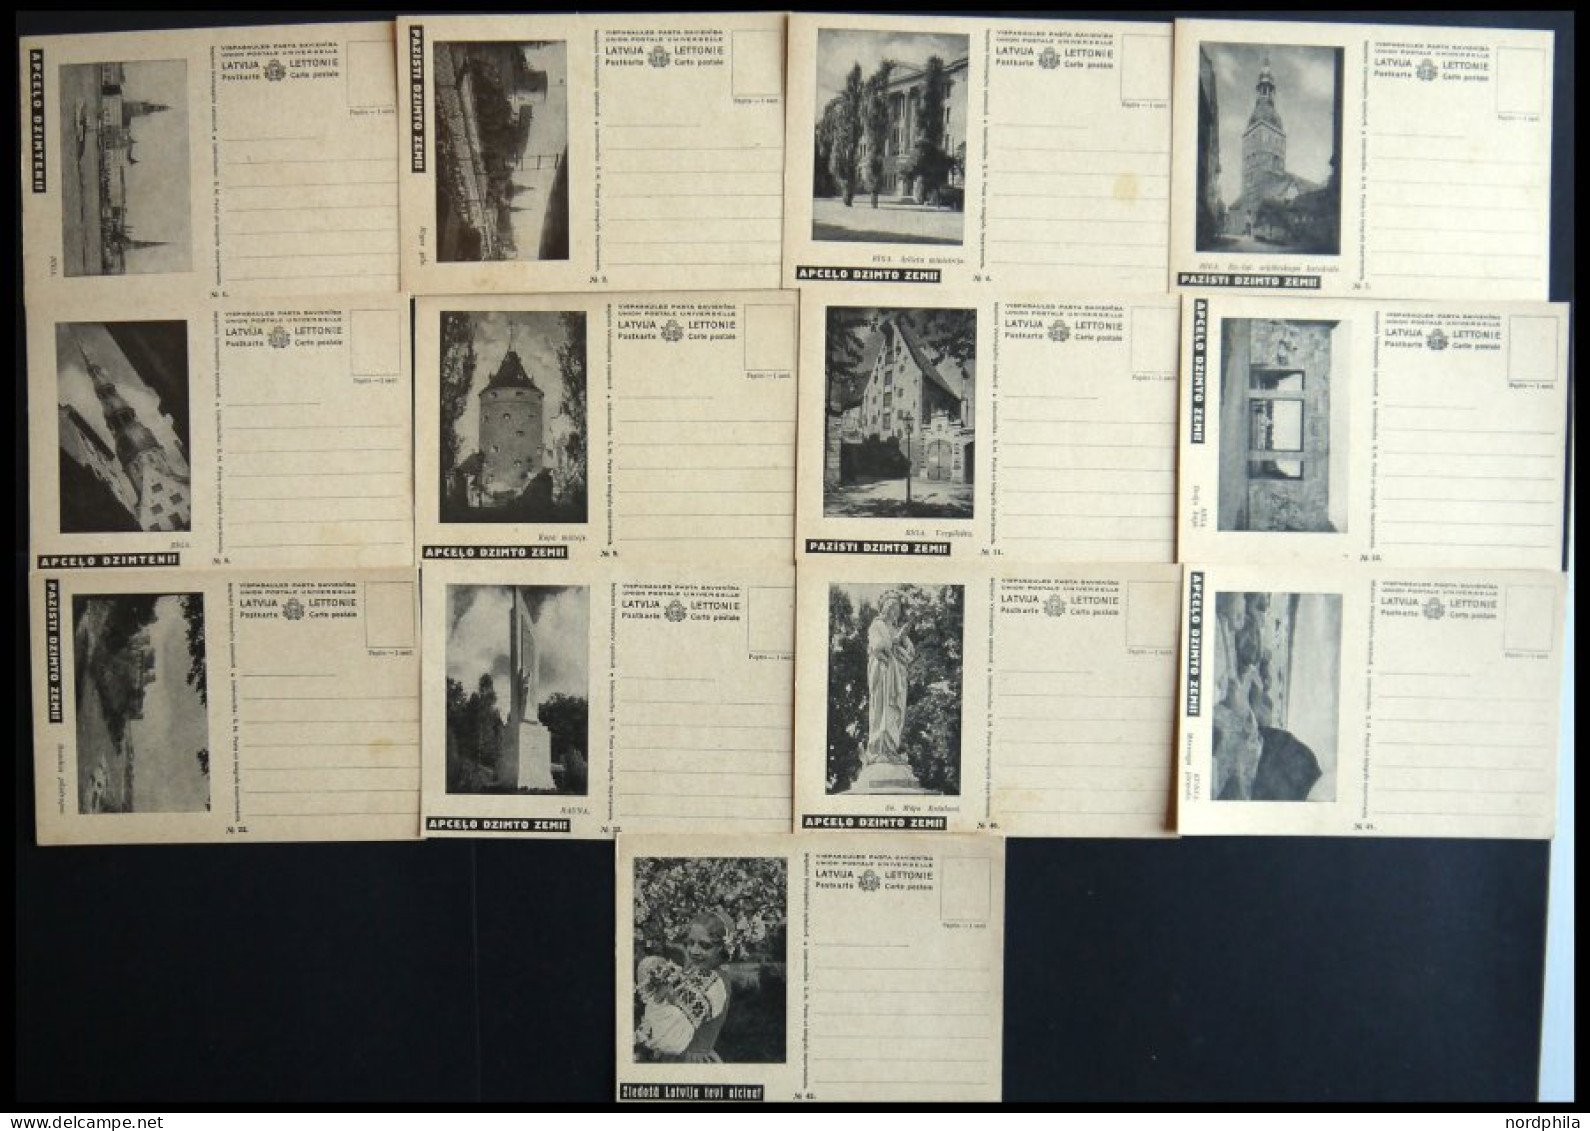 LETTLAND BP BRIEF, 1938, Tourismus Bildpostkarten, 13 Verschiedene Ungebrauchte Karten (Nr. 1,2,4,7-9,11/2,22,32,40-42), - Letland